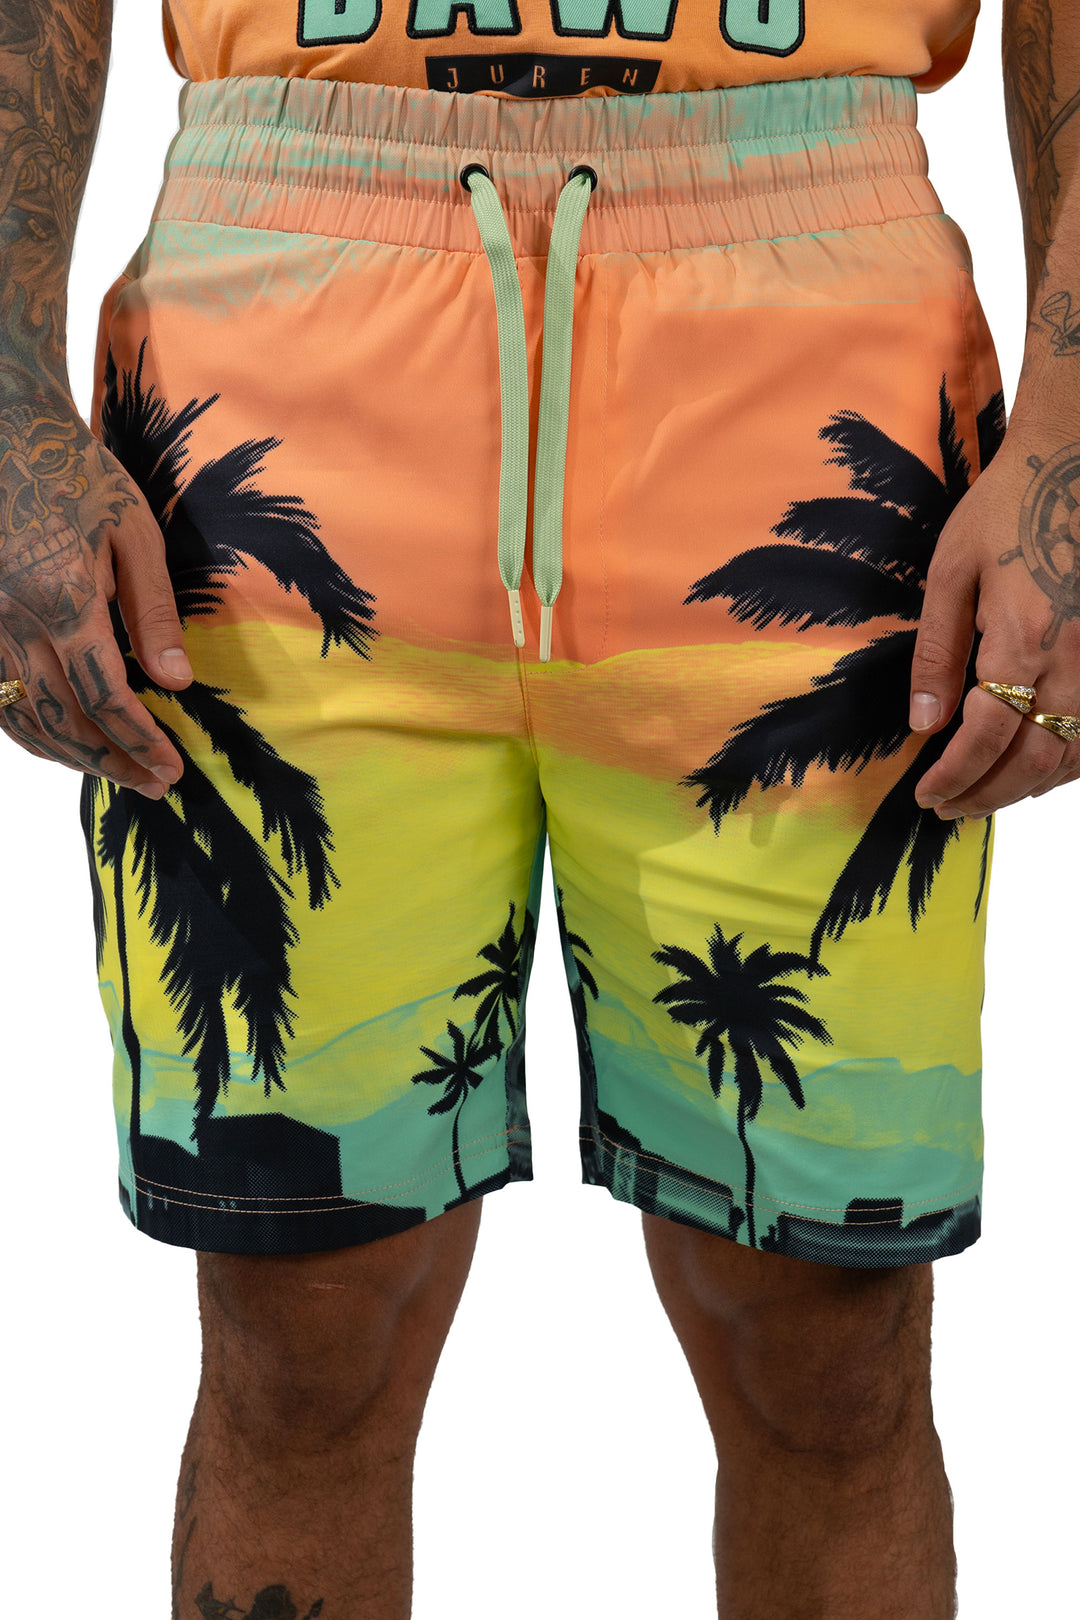 Big Dawg Nylon Vacation Shorts